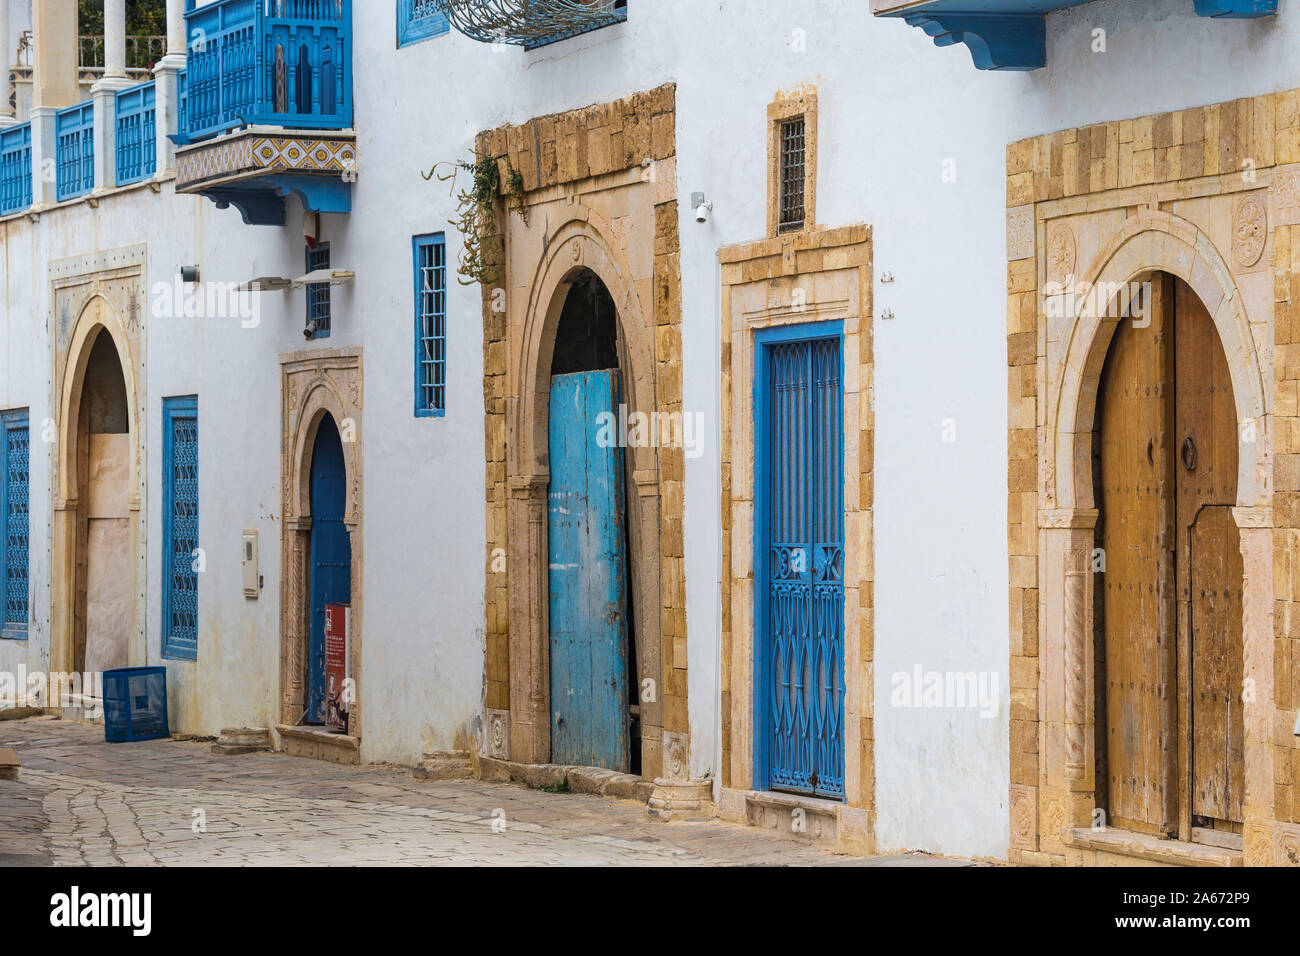 La Tunisie, rue Principale dans le pittoresque village blanc de Sidi Bou Said Banque D'Images